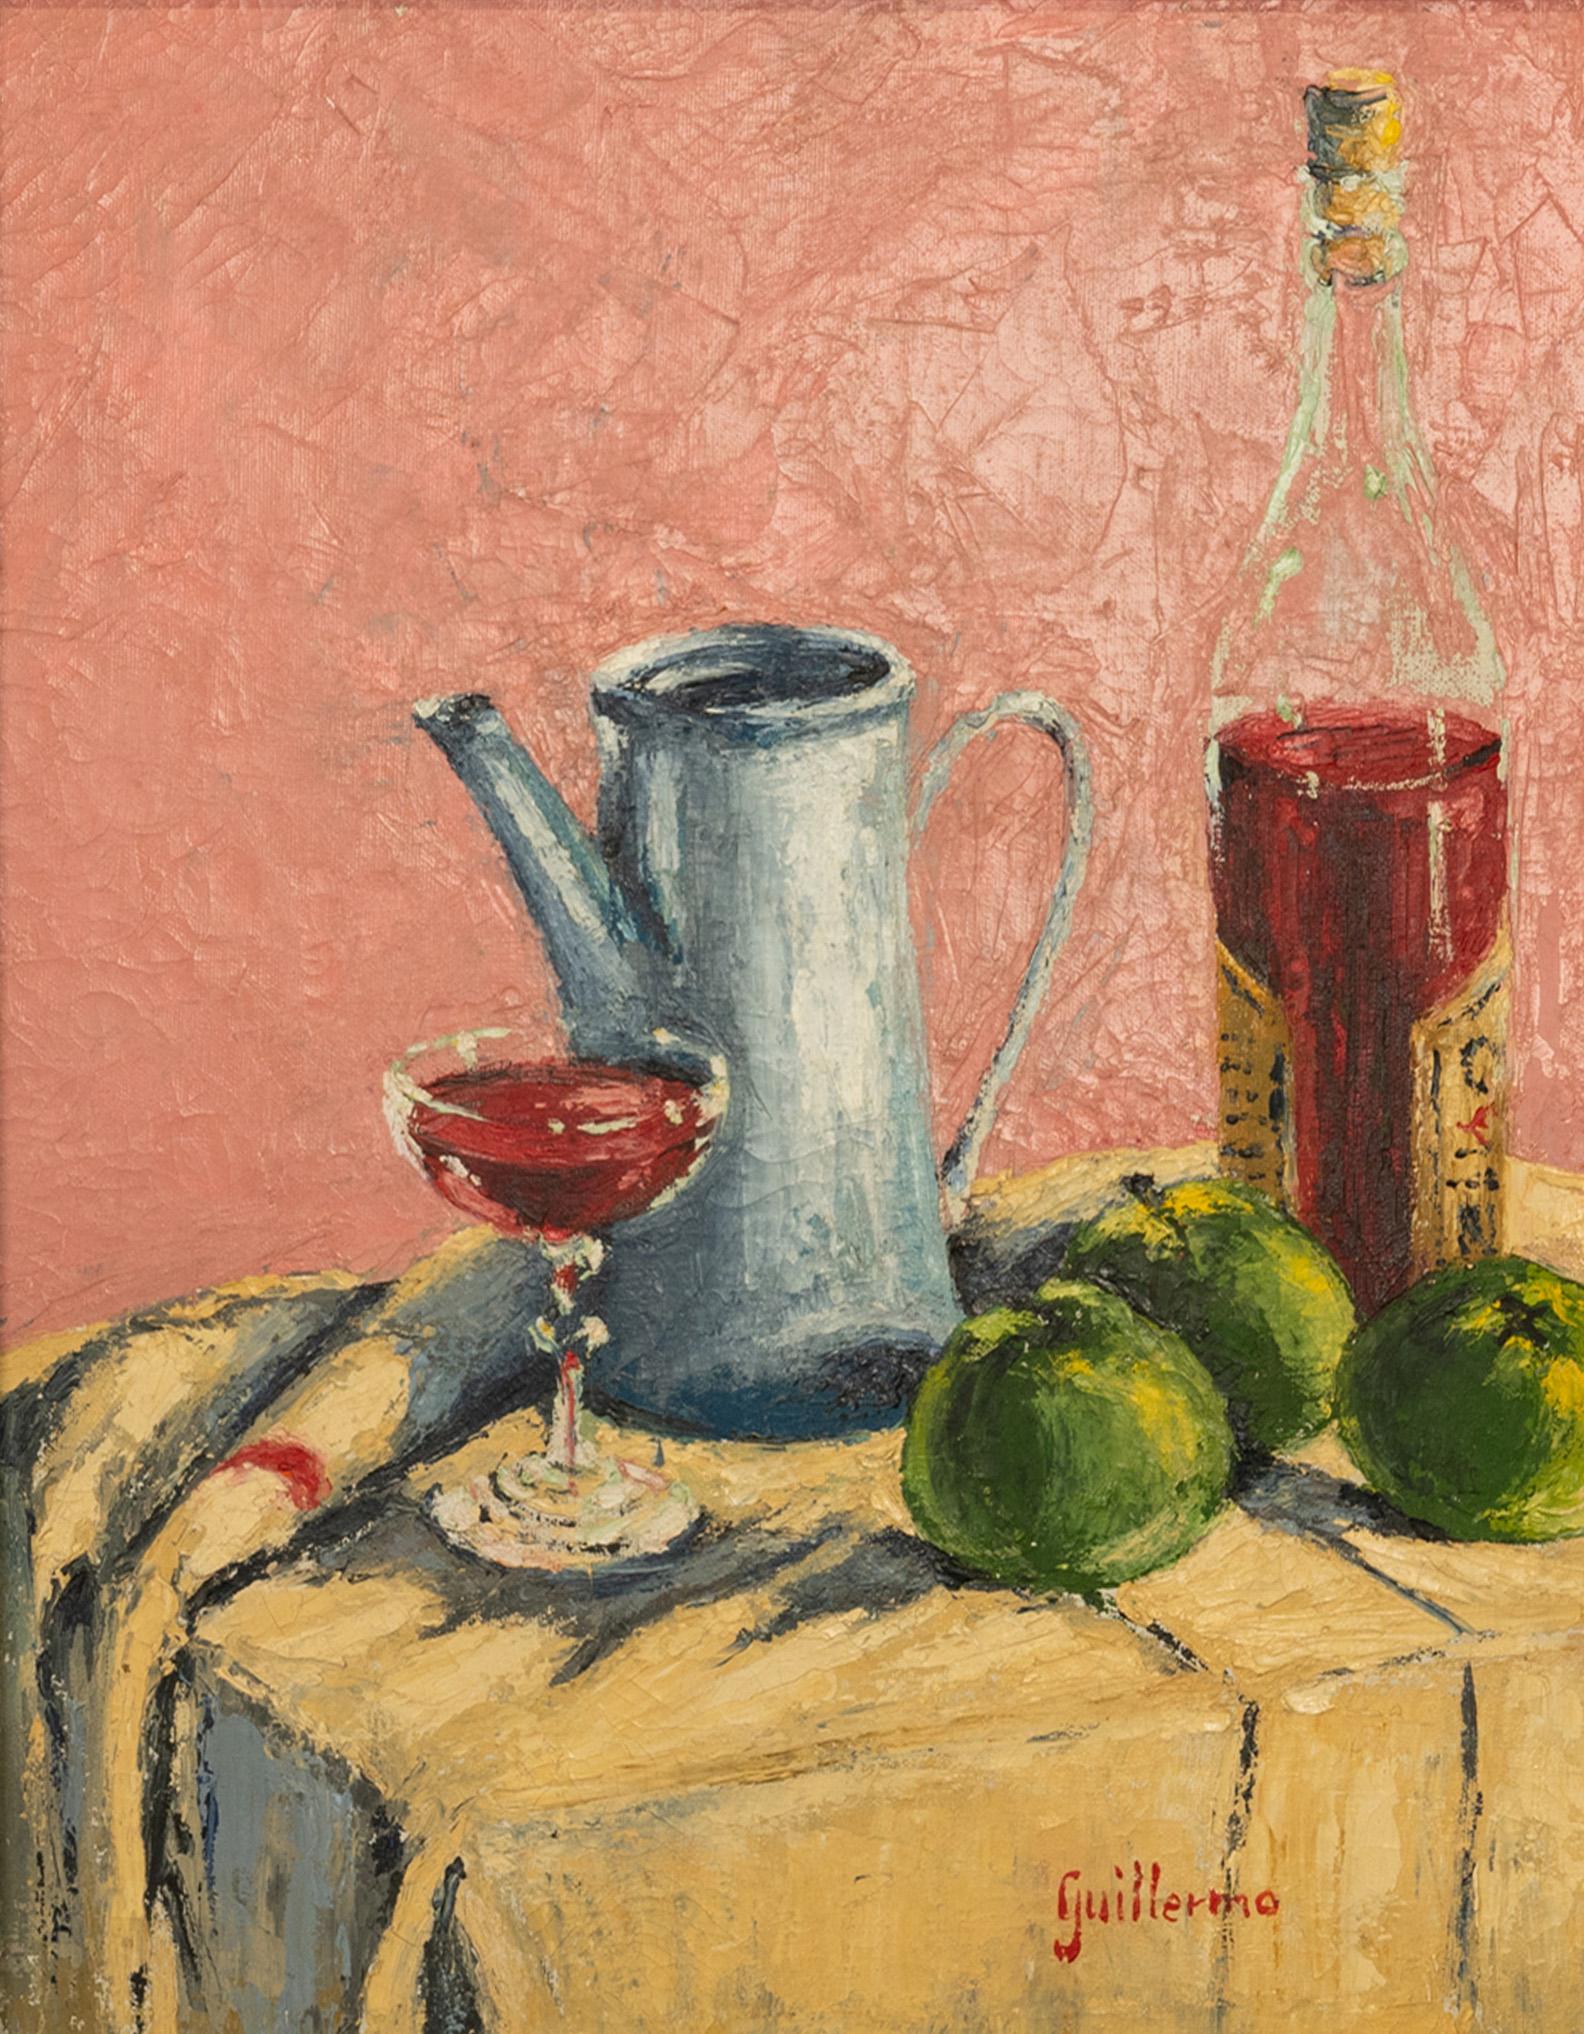  Modernistisches spanisches abstrakt-impressionistisches Ölgemälde auf Leinwand, Stillleben 1950  (Abstrakter Impressionismus), Painting, von Juan Guillermo